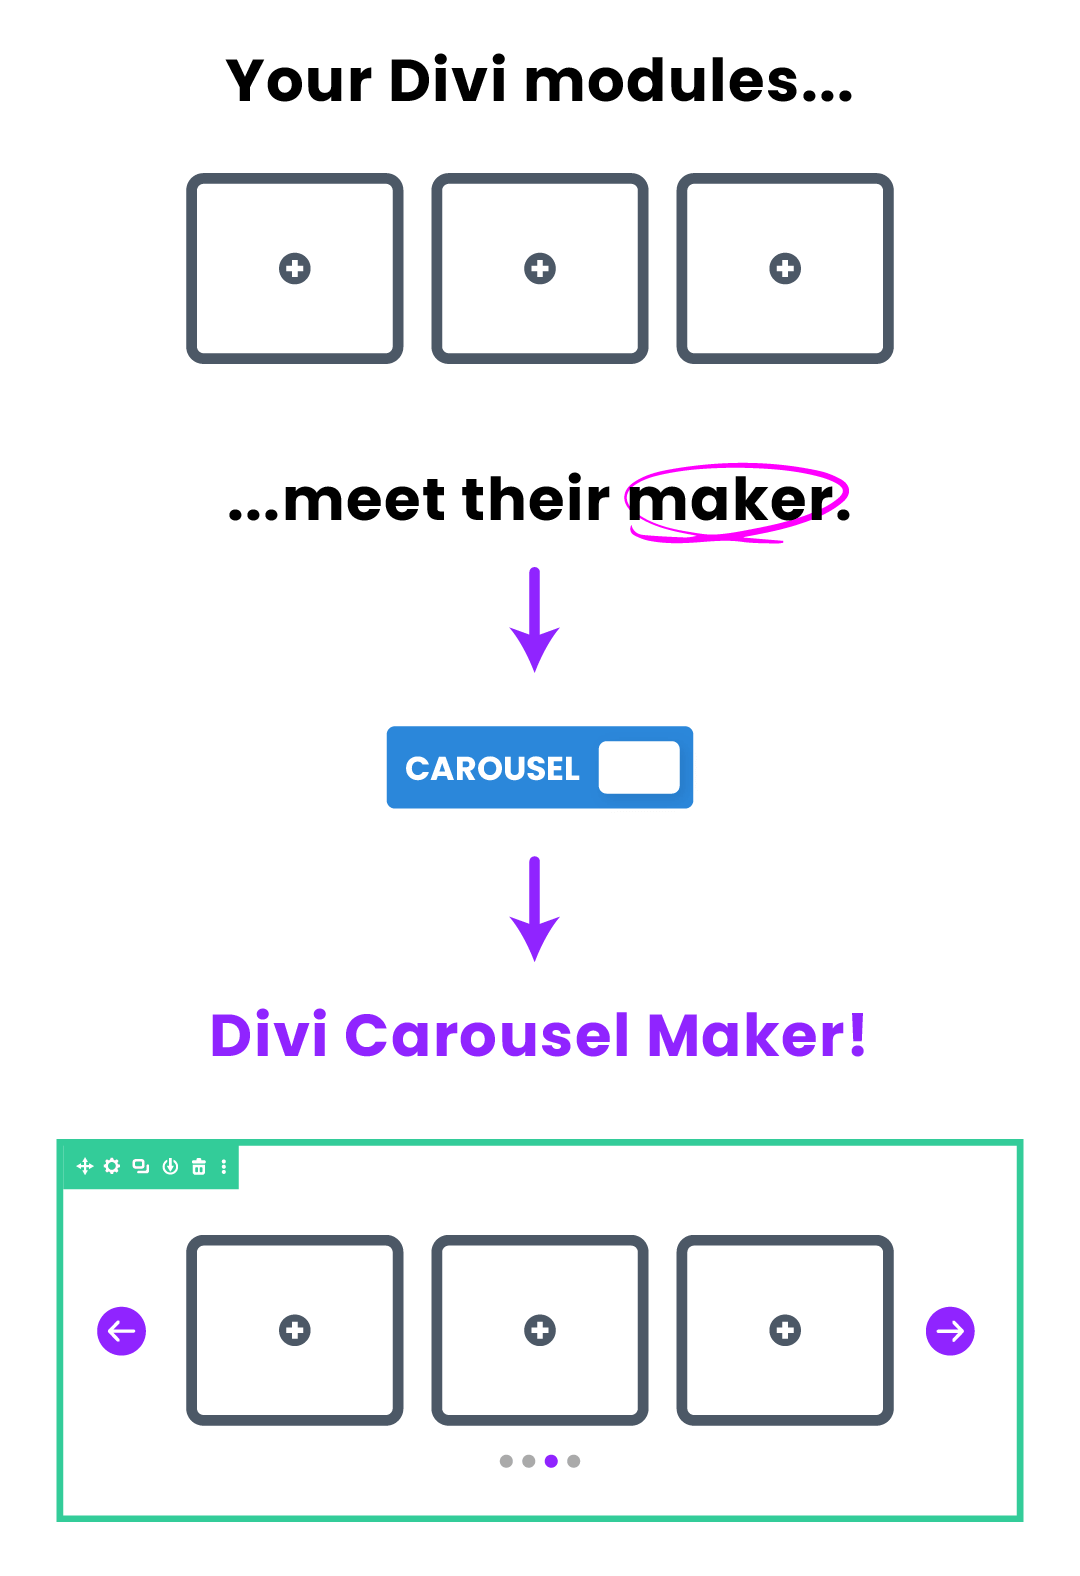 Divi Carousel Maker infographic